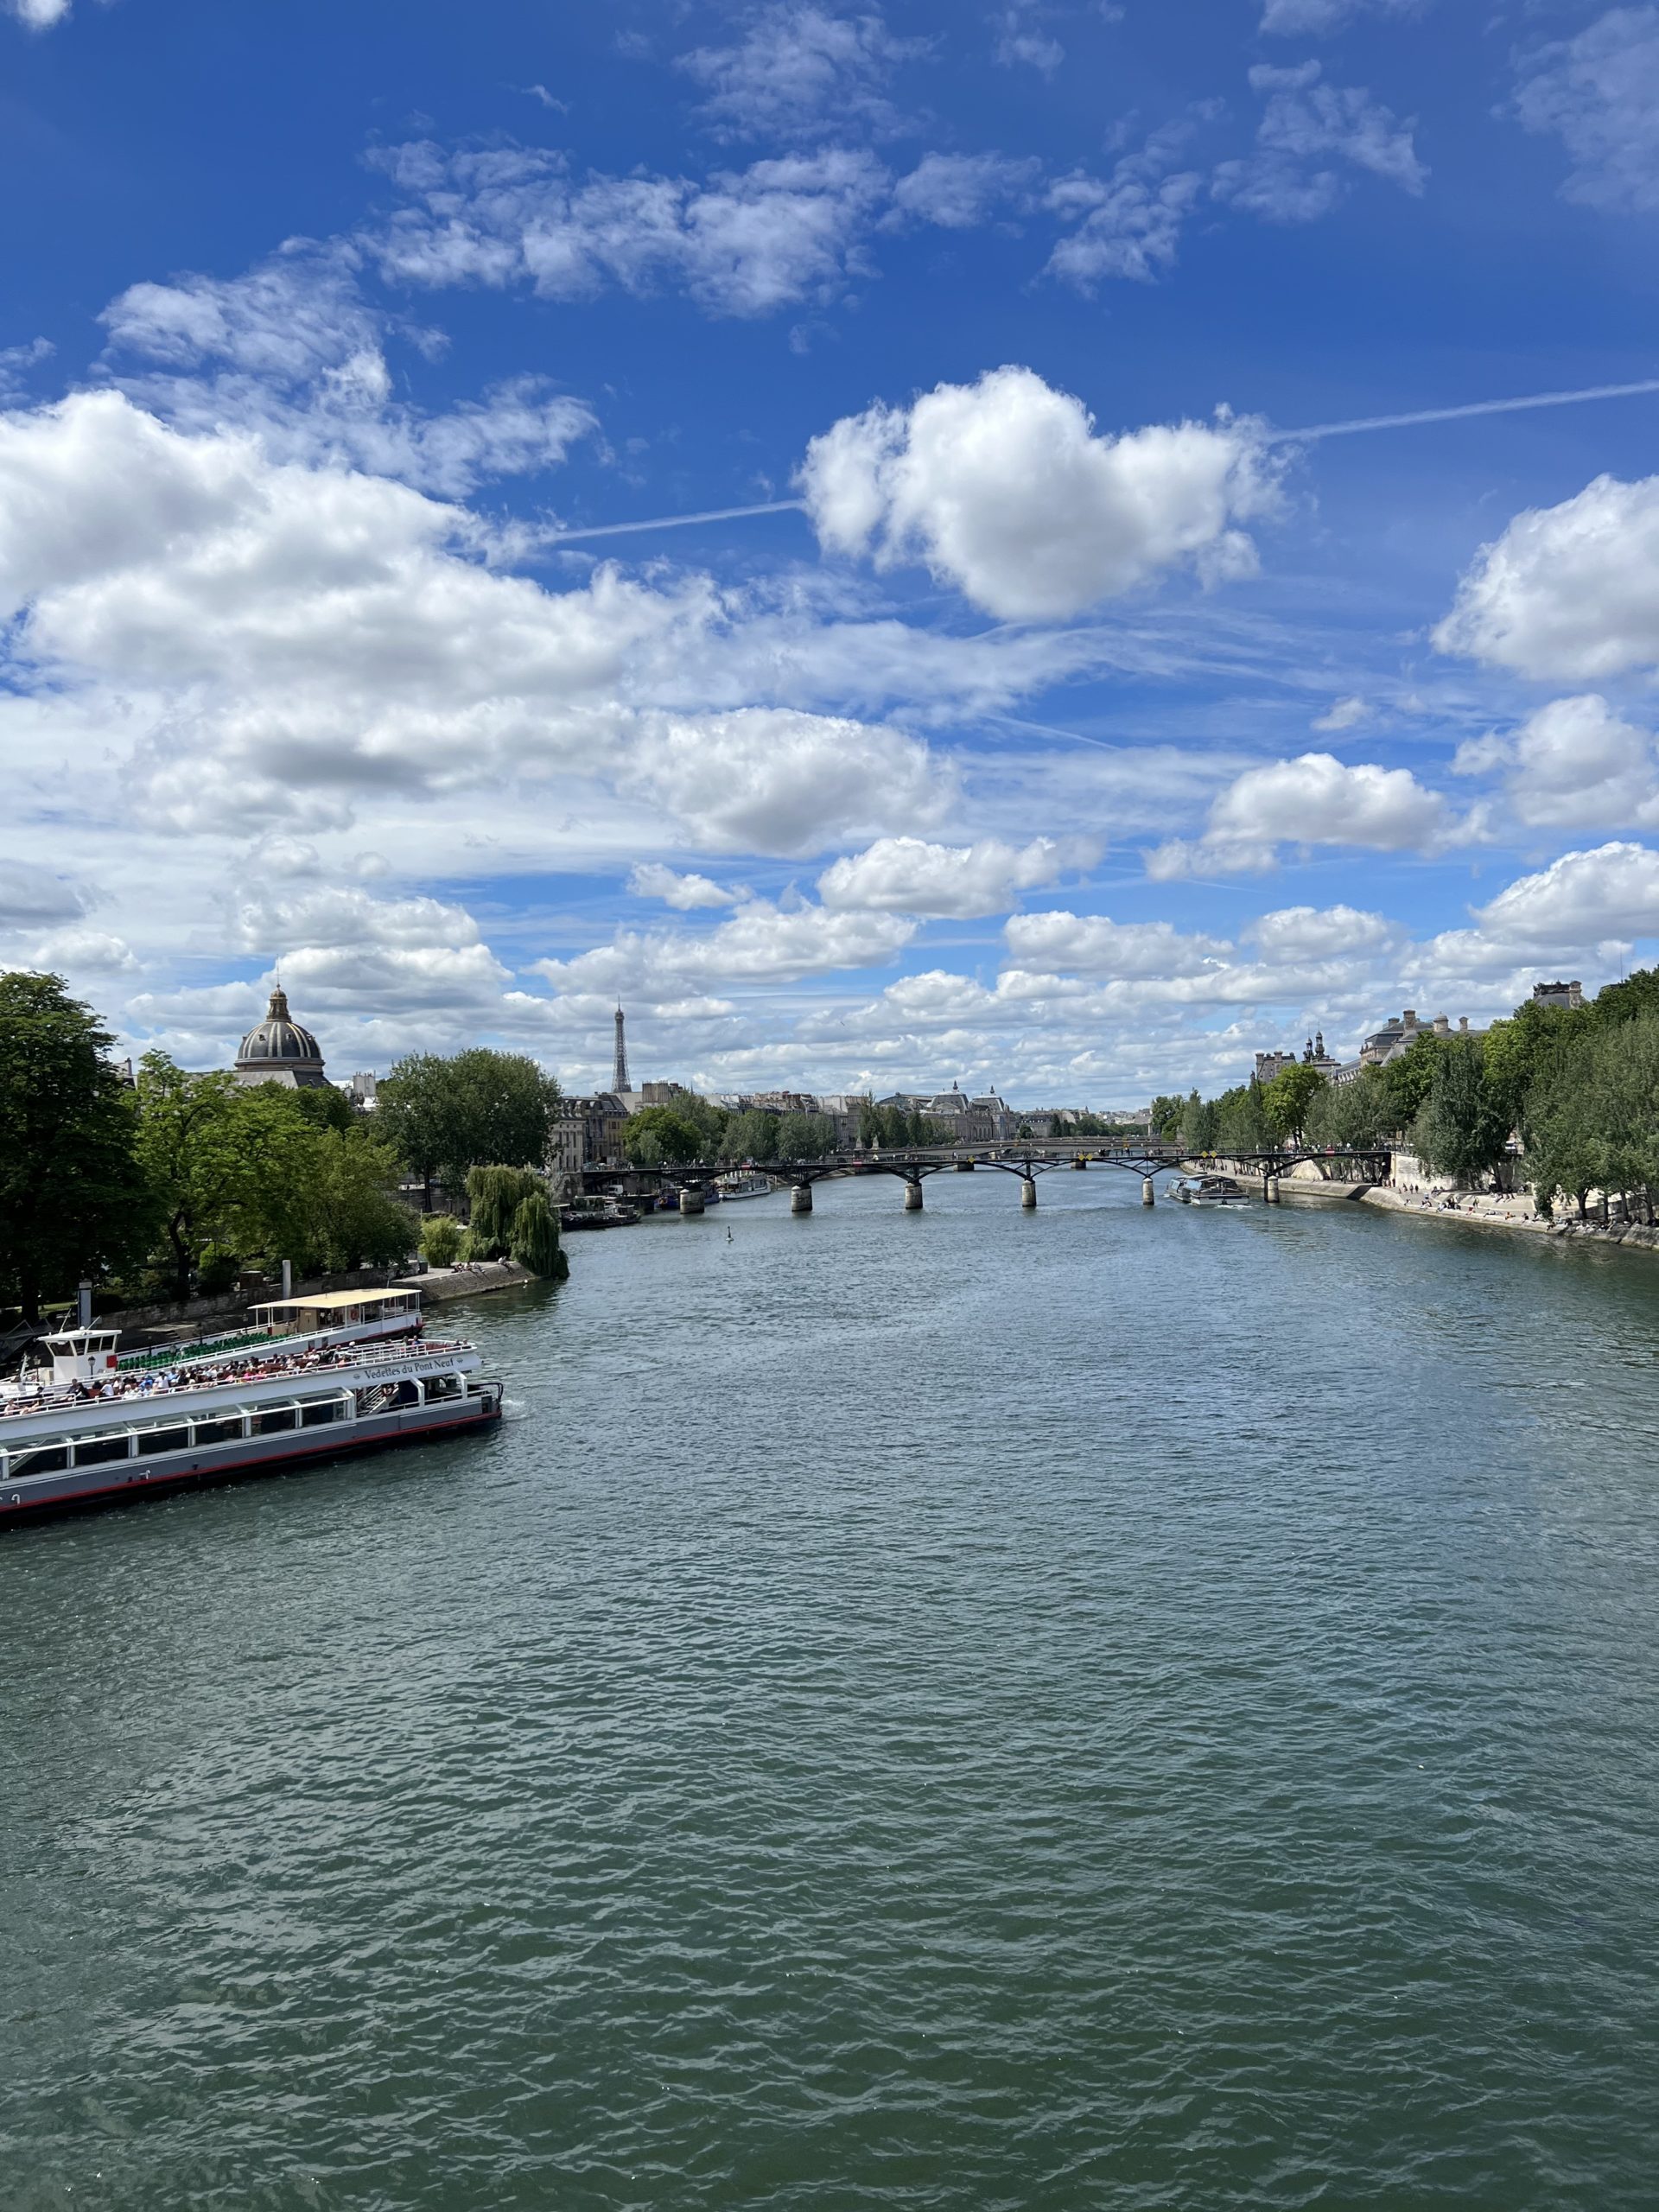 The Seine river